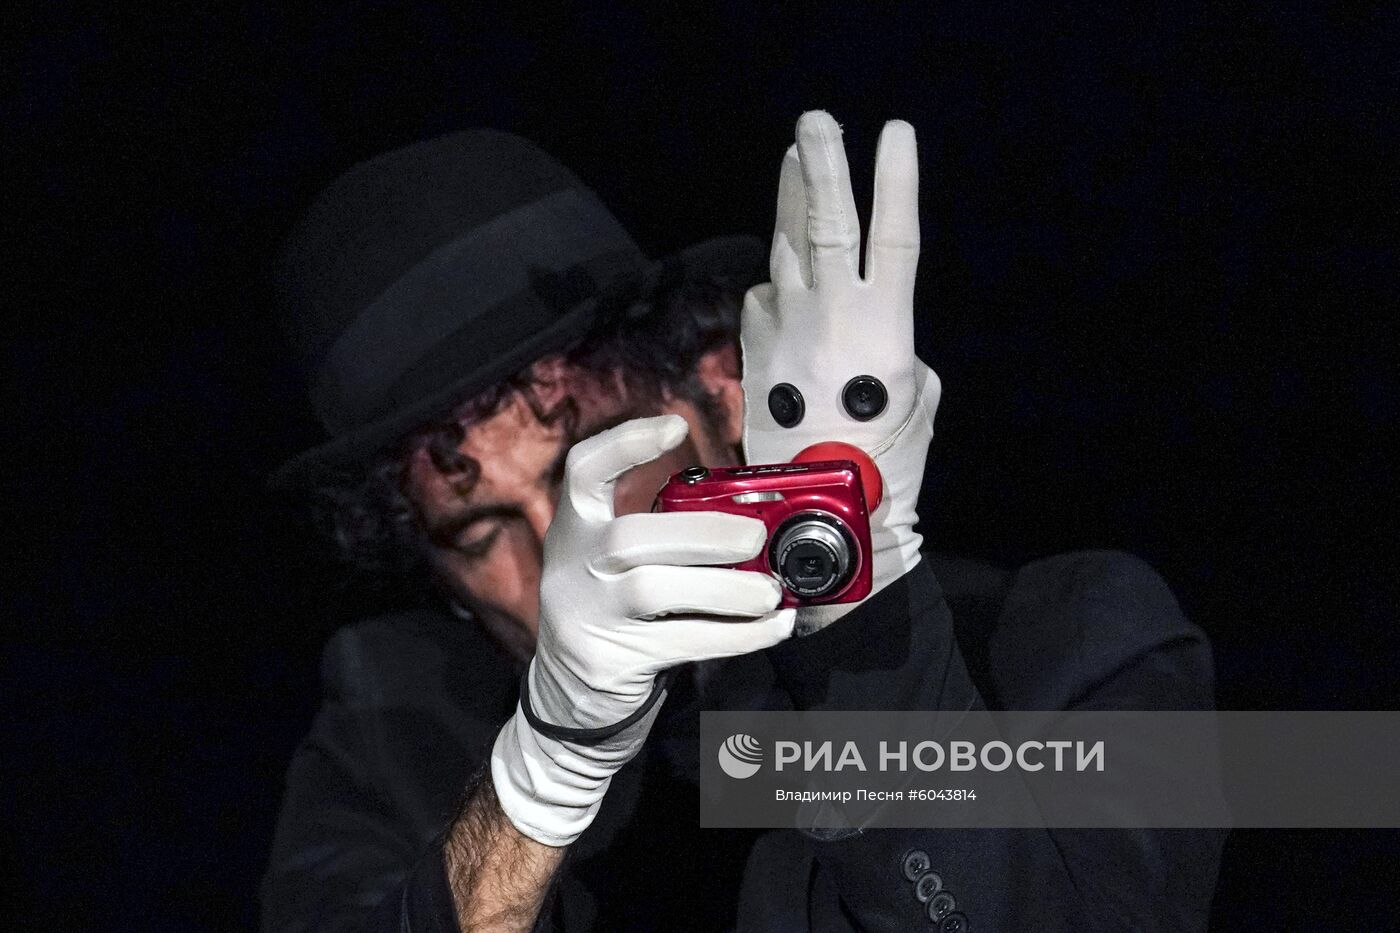 Театр "Ноль за поведение" на фестивале имени С. Образцова